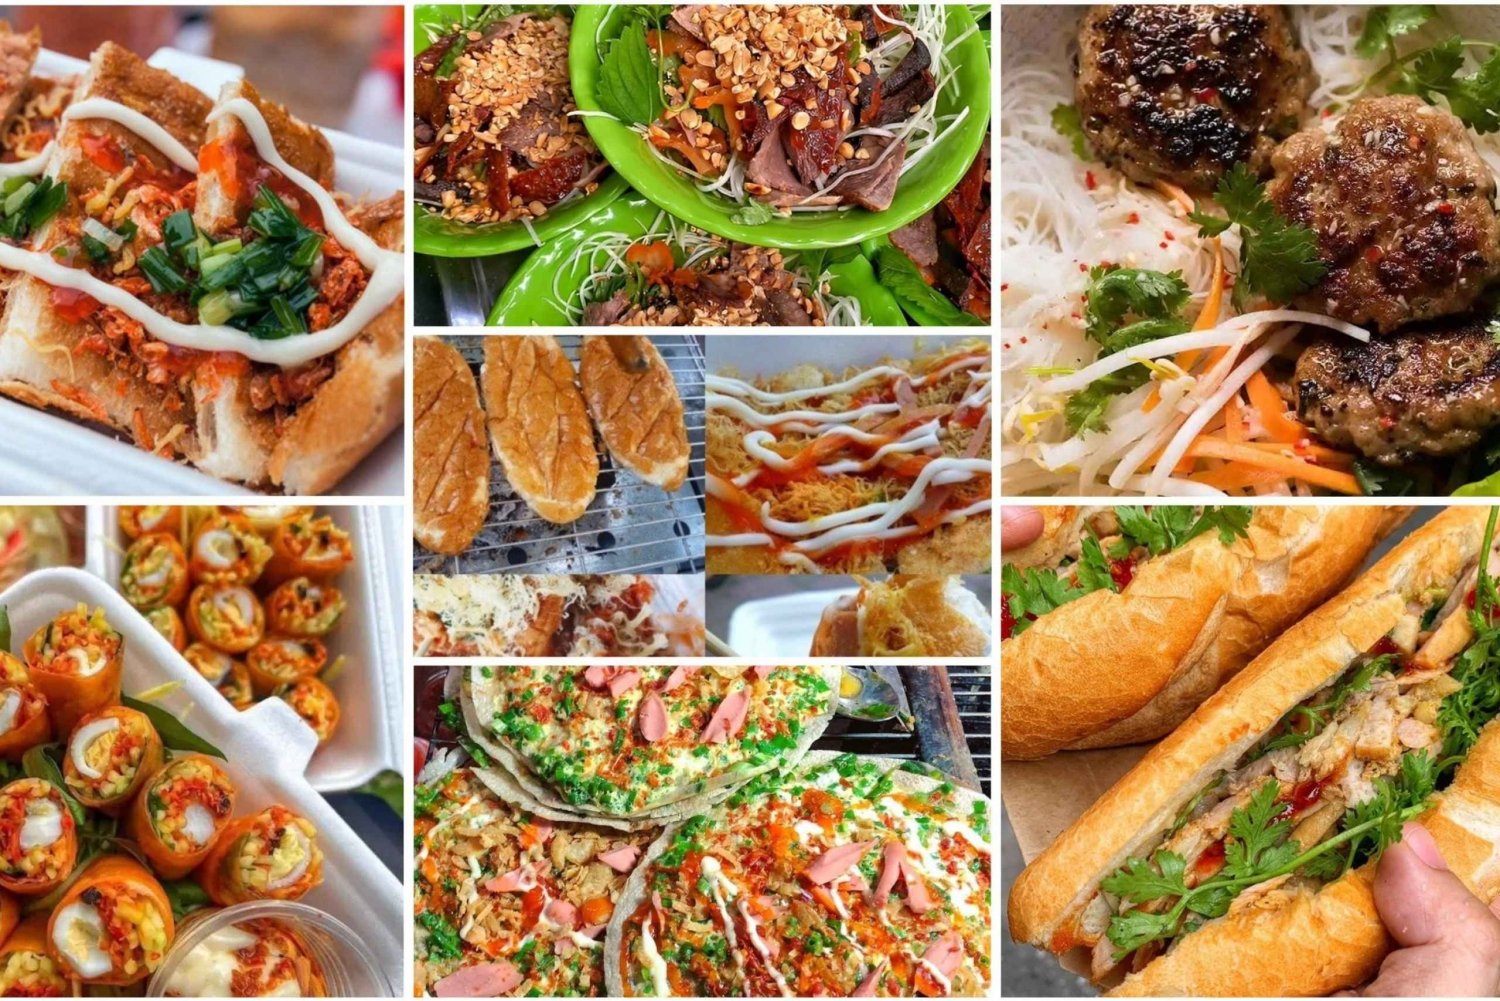 Hanoi: Private Tour of Vietnamese Street Food